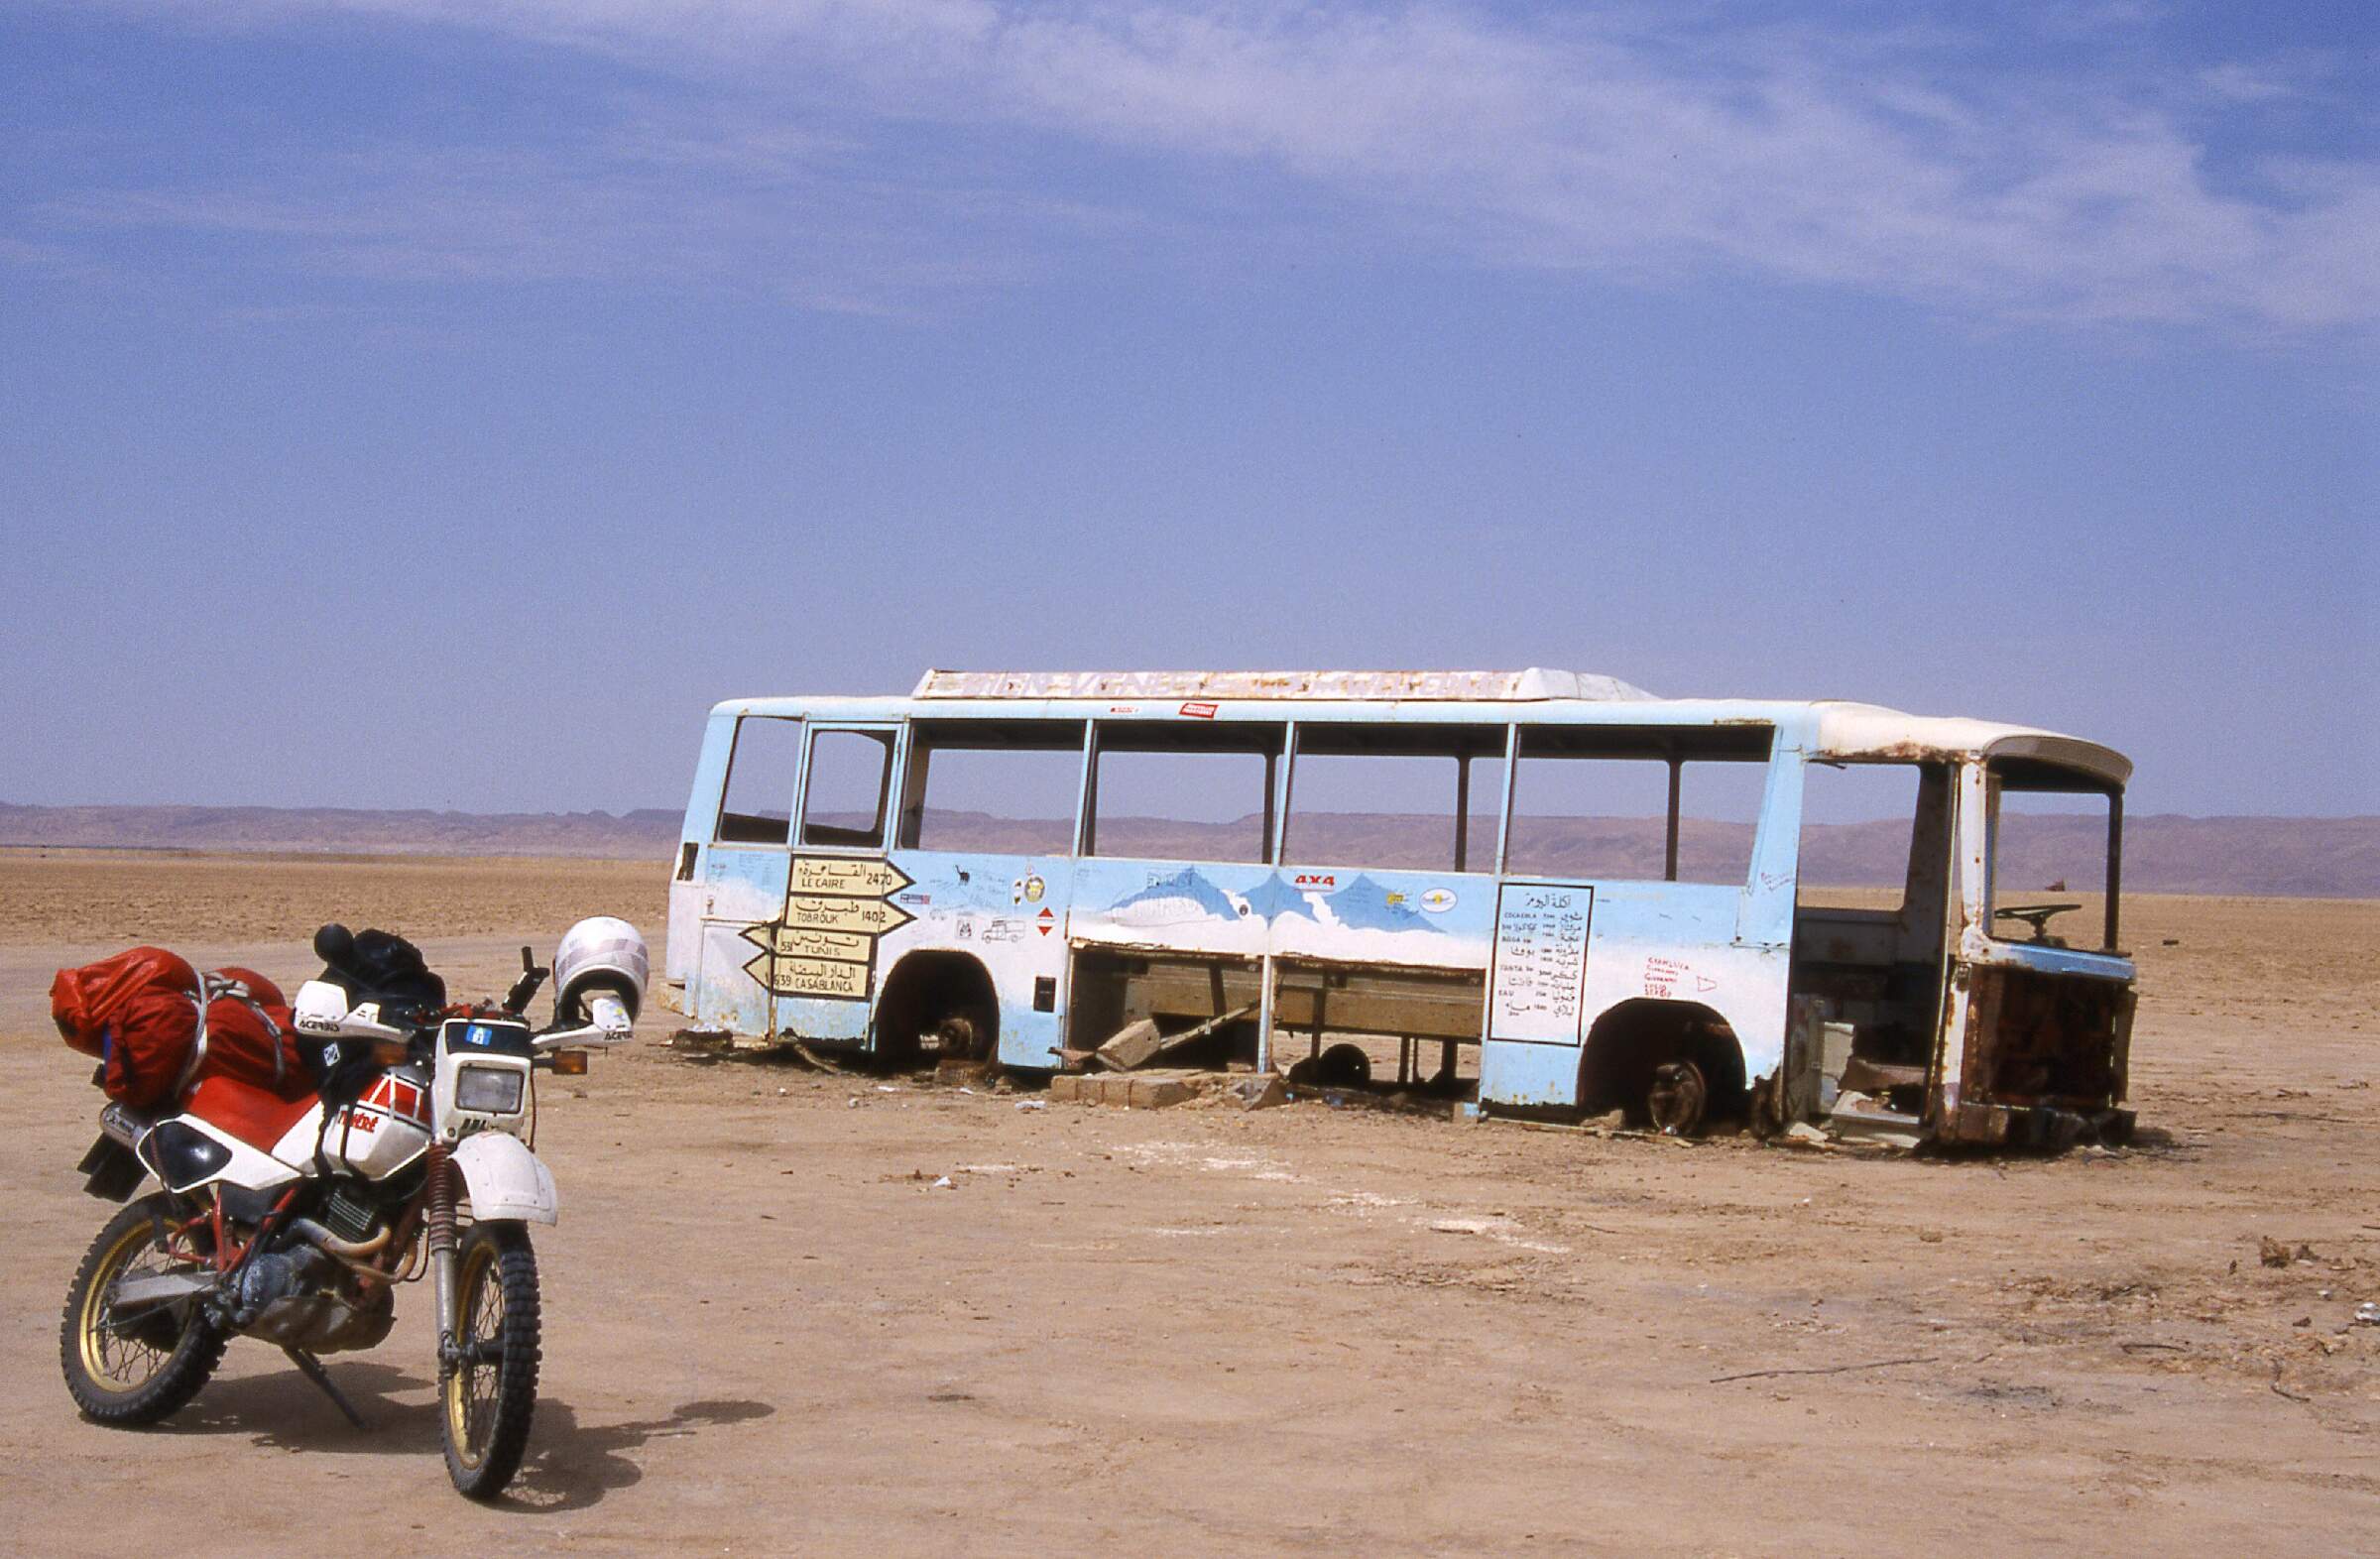 Endstation - dieser Bus endet hier. ...im Chott El Jerid. Man darf die Tücke des Untergrunds nicht unterschätzen. Aber das haben wir ja schon in Karl Mays *Durch die Wüste* gelesen, oder?!